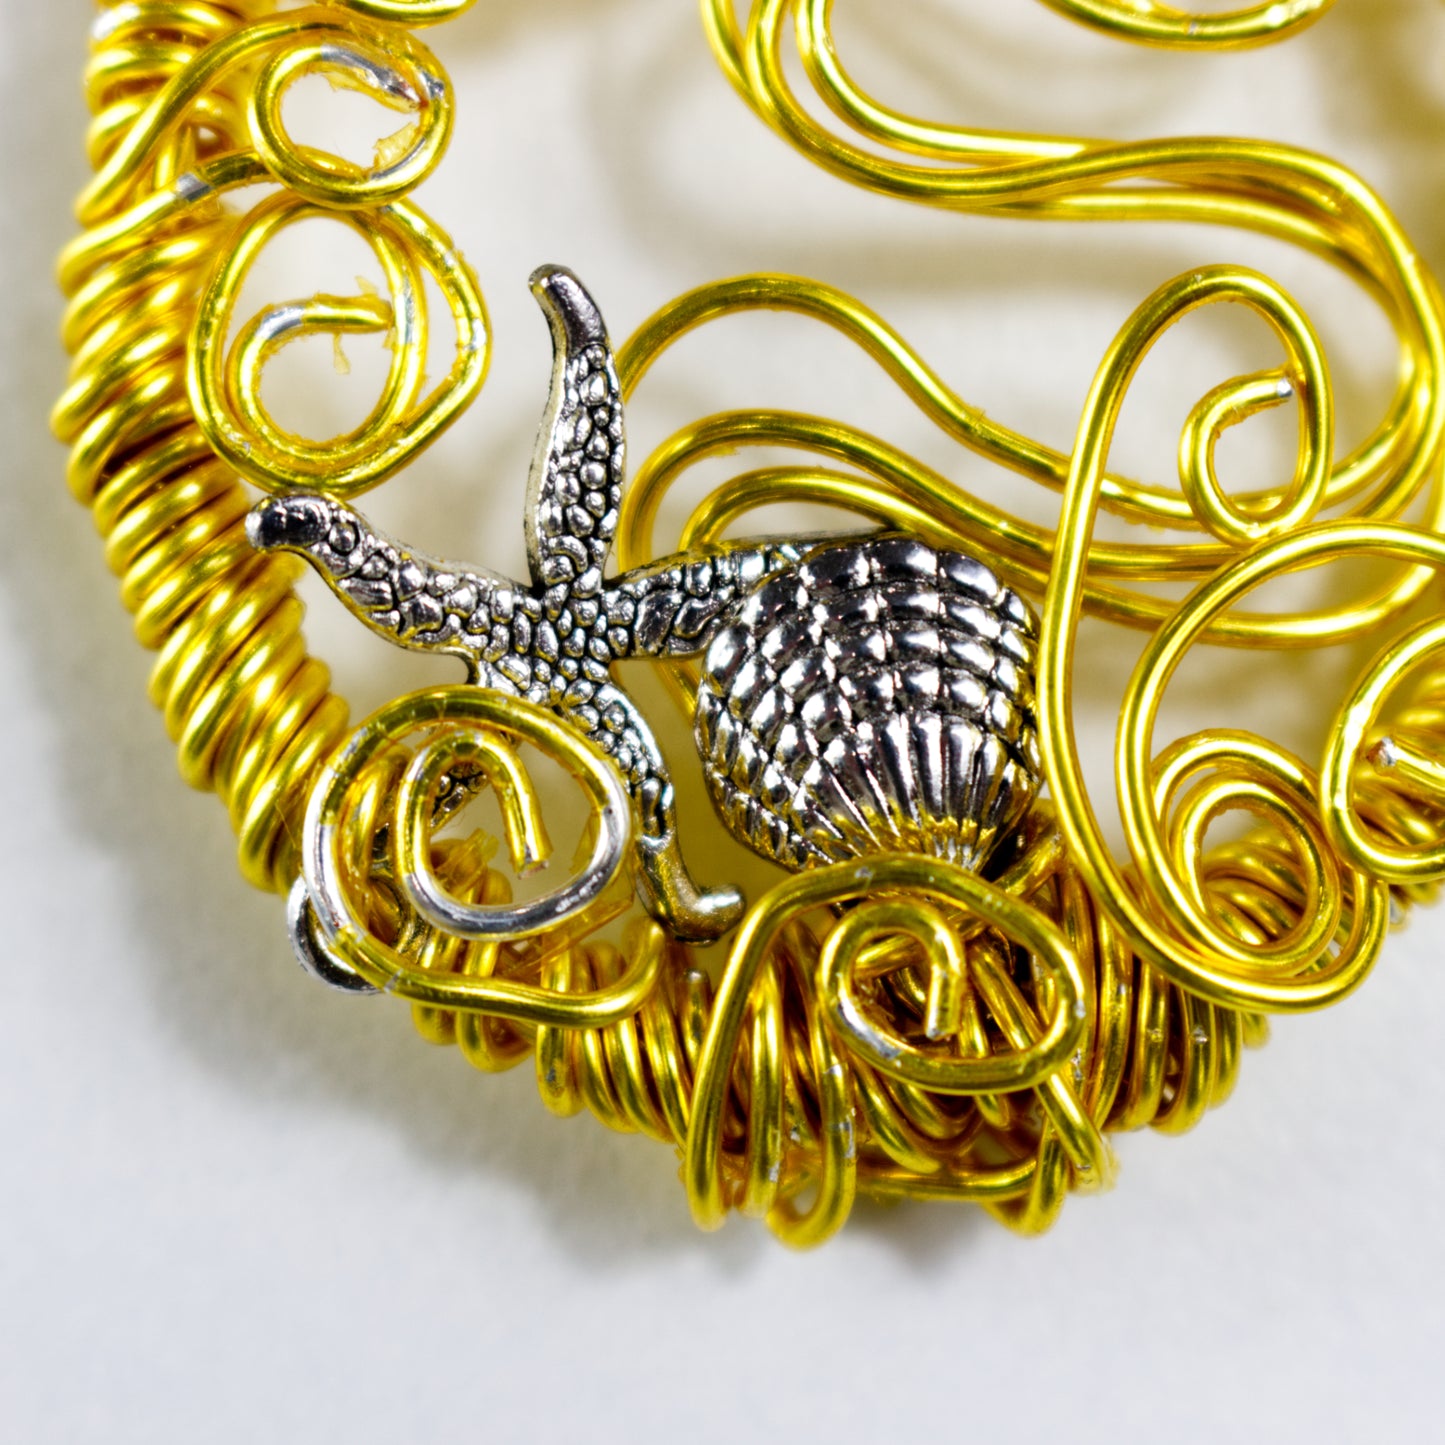 Wire Weave Pendant Necklace | Mermaid Wire Pendant | Artisans Boutique